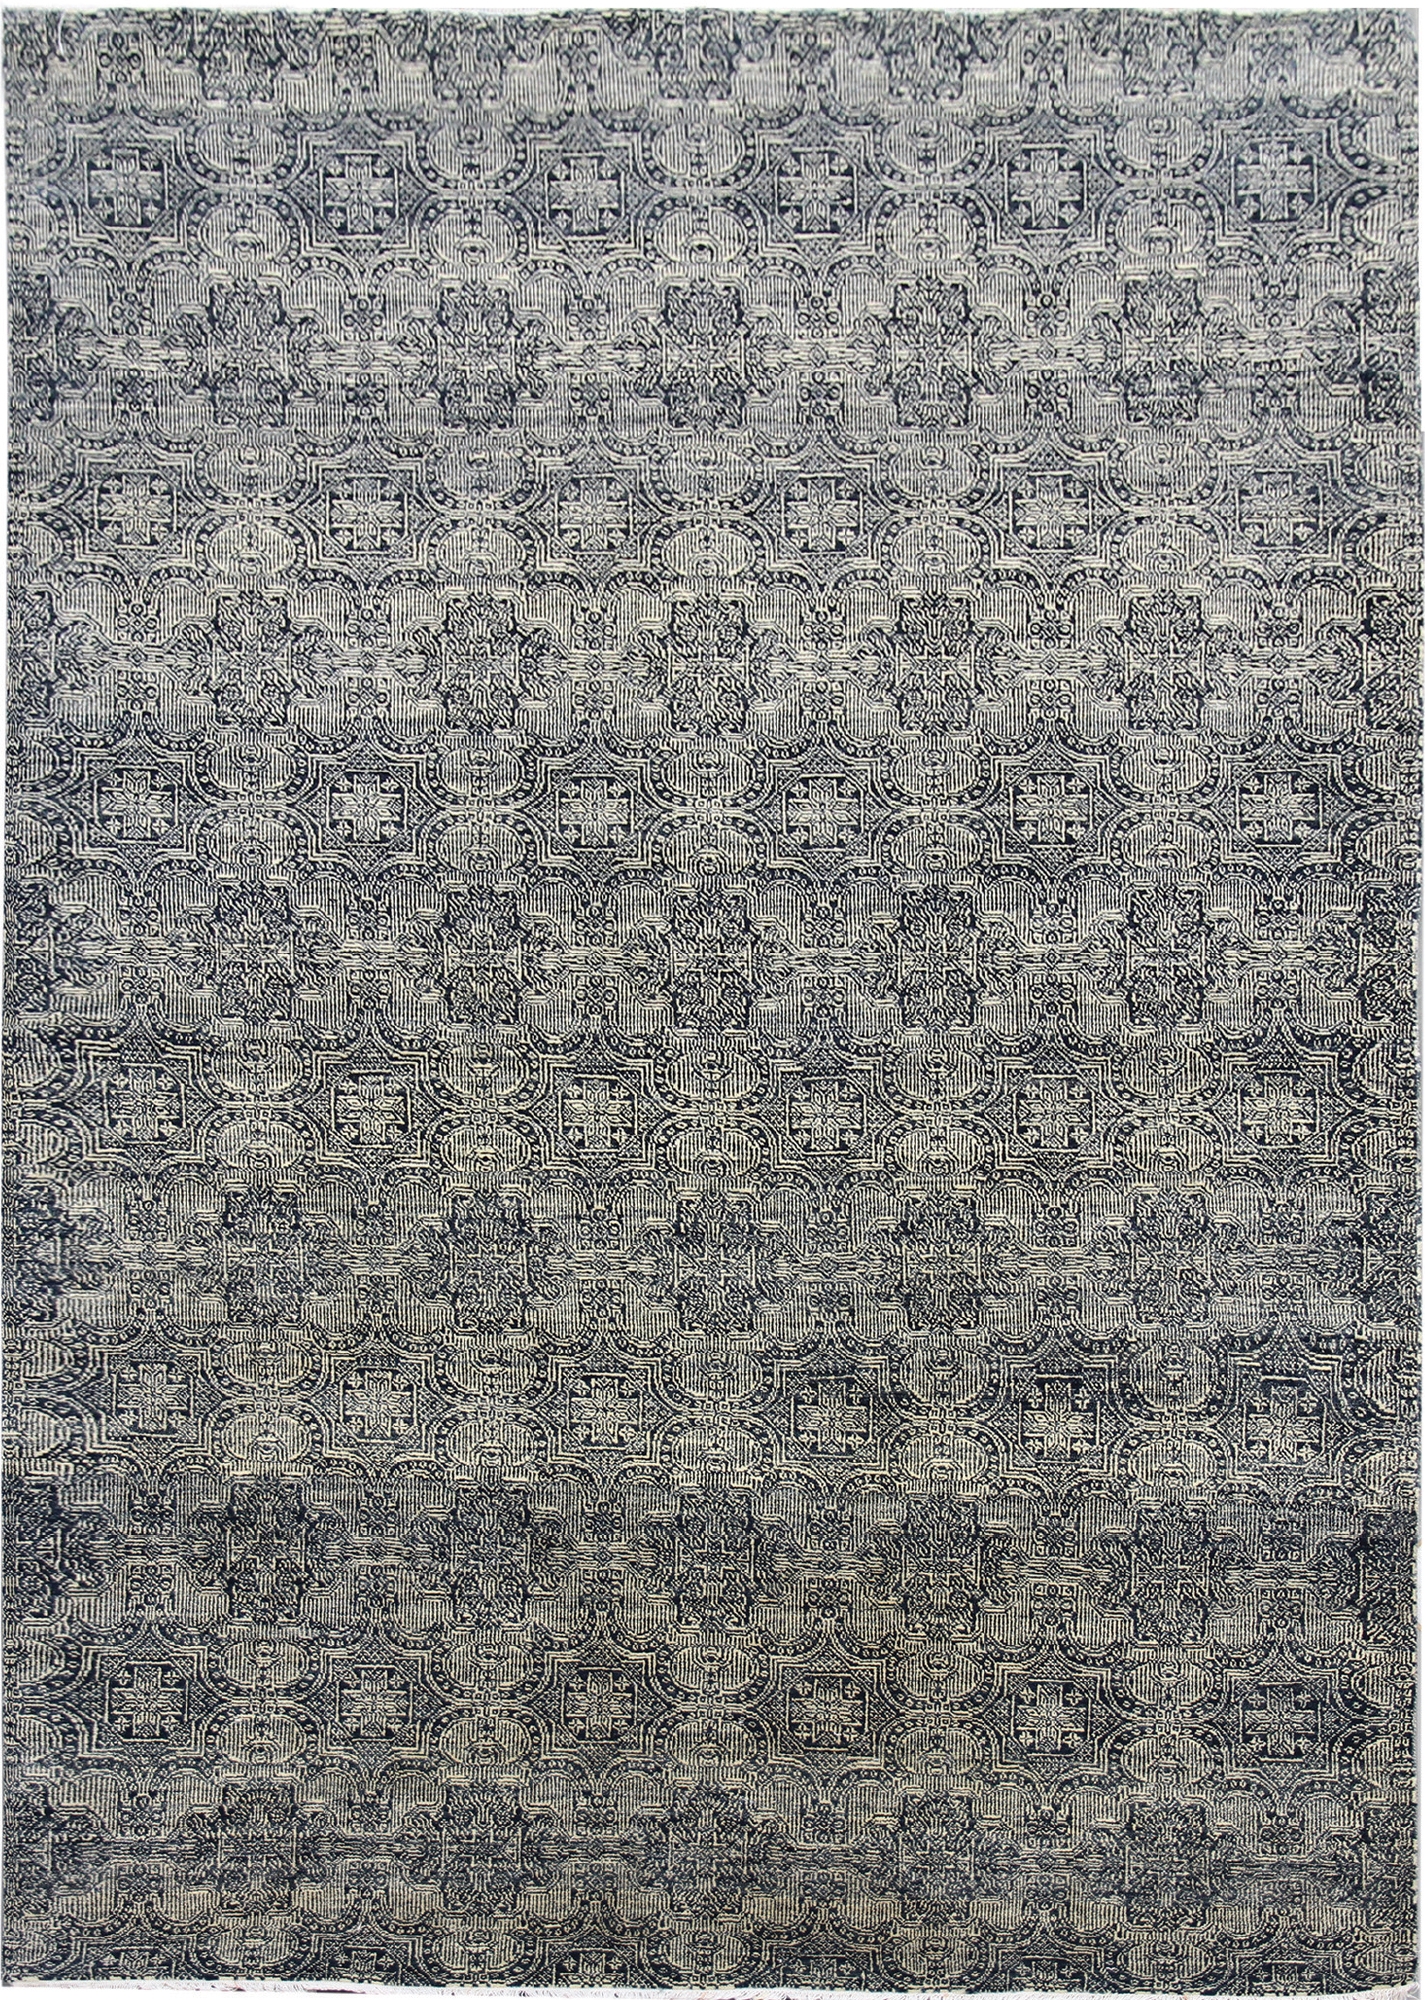 Ručne viazaný kusový koberec Diamond DC-JK 1 SILVER / BLACK - 305x425 cm Diamond Carpets koberce 